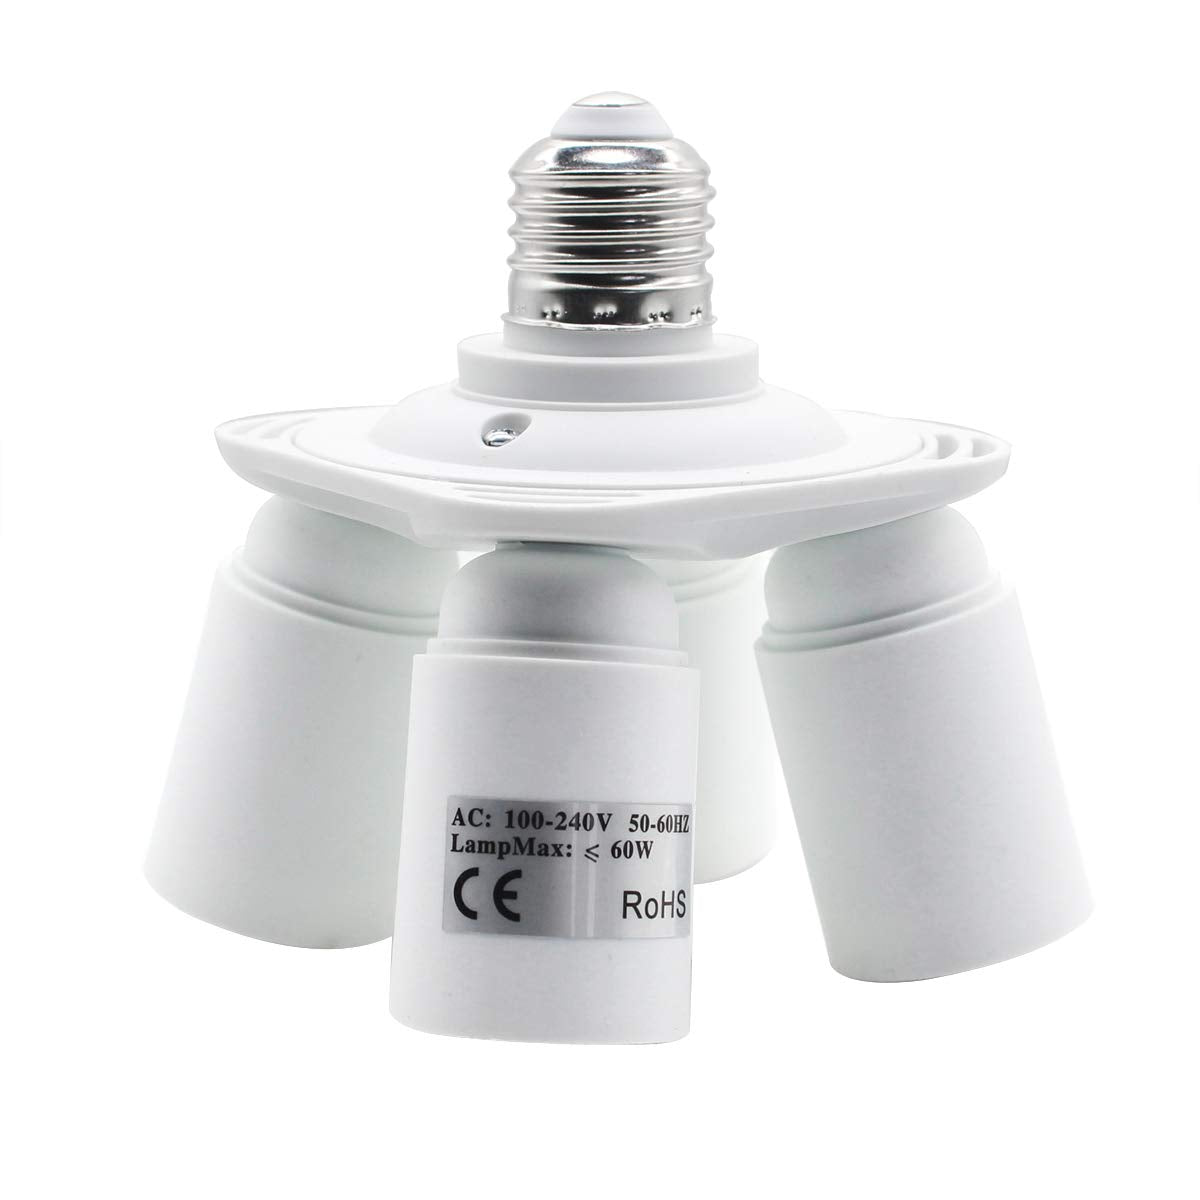 YI LIGHTING - 3 in 1 E26/E27 Socket Splitter Use for E26/E27 Standard Base  Bulbs Medium Socket White (3 in 1)